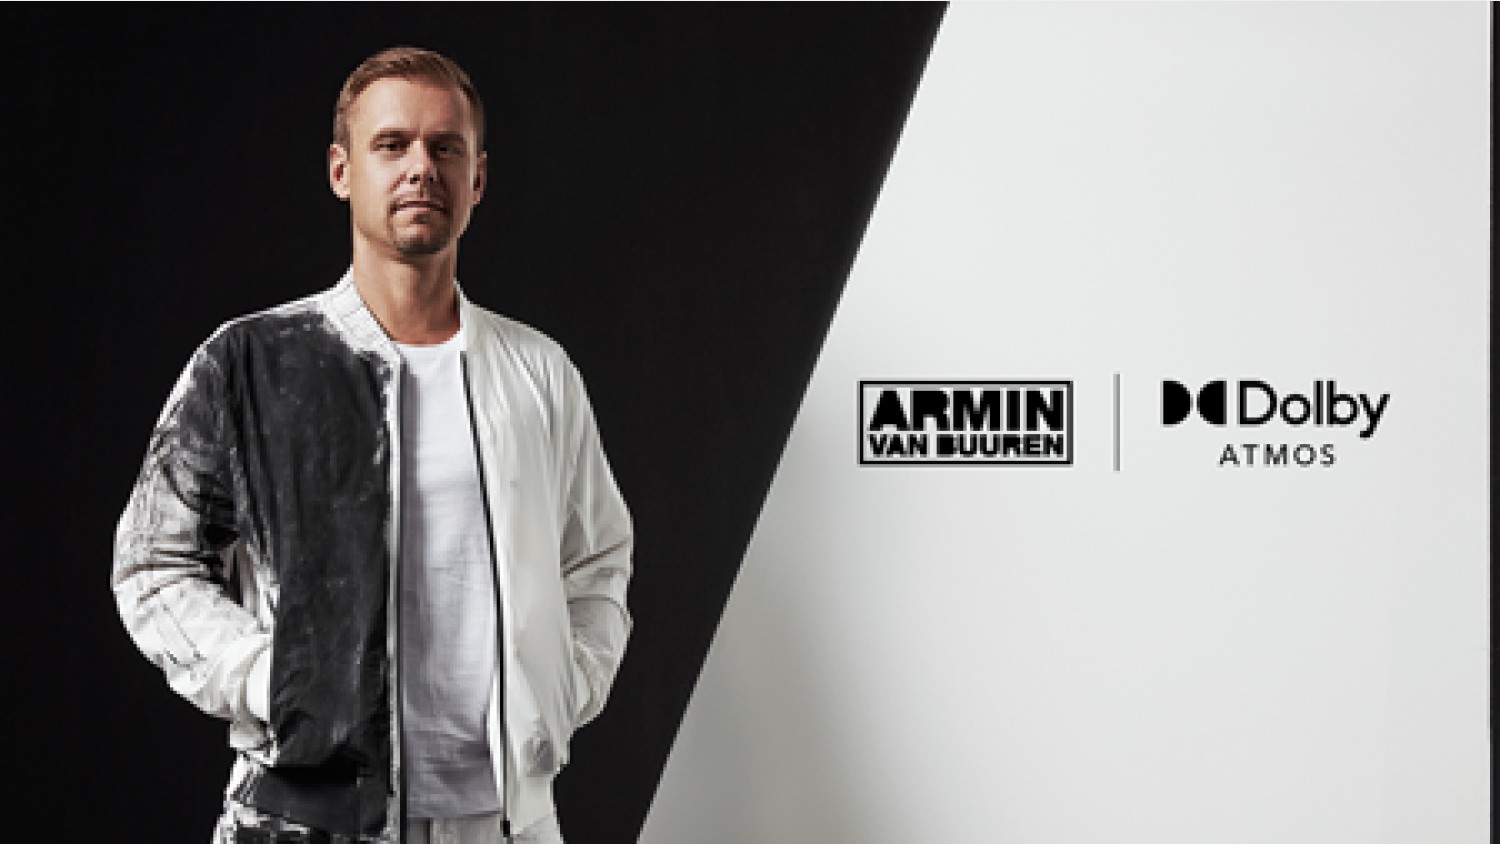 Party nieuws: Armin van Buuren brengt zijn zevende studio album